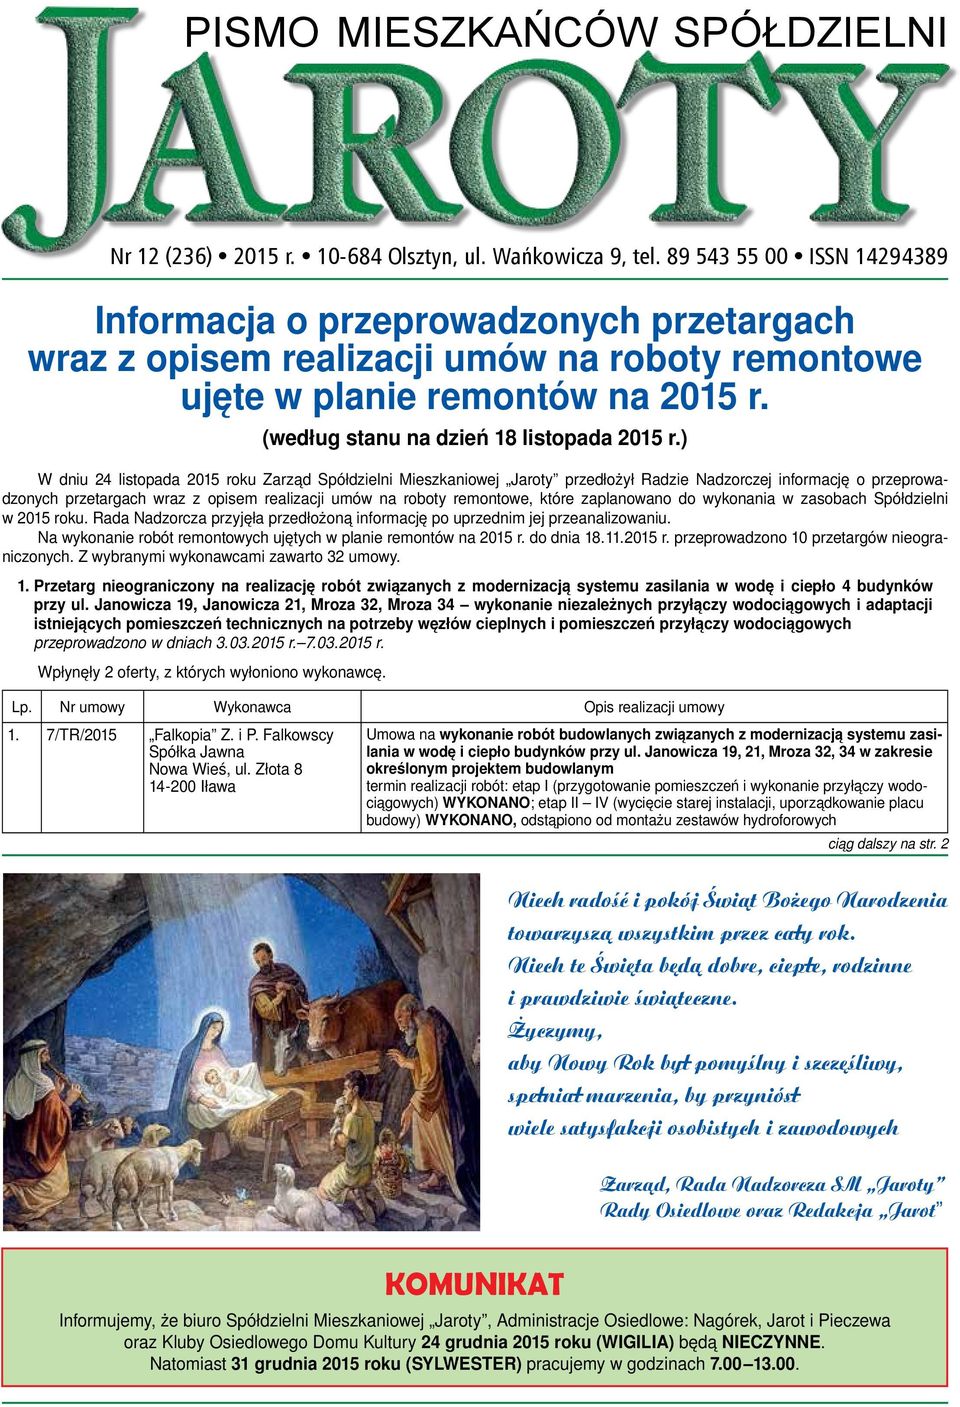 ) W dniu 24 listopada 2015 roku Zarząd Spółdzielni Mieszkaniowej Jaroty przedłożył Radzie Nadzorczej informację o przeprowadzonych przetargach wraz z opisem realizacji umów na roboty remontowe, które